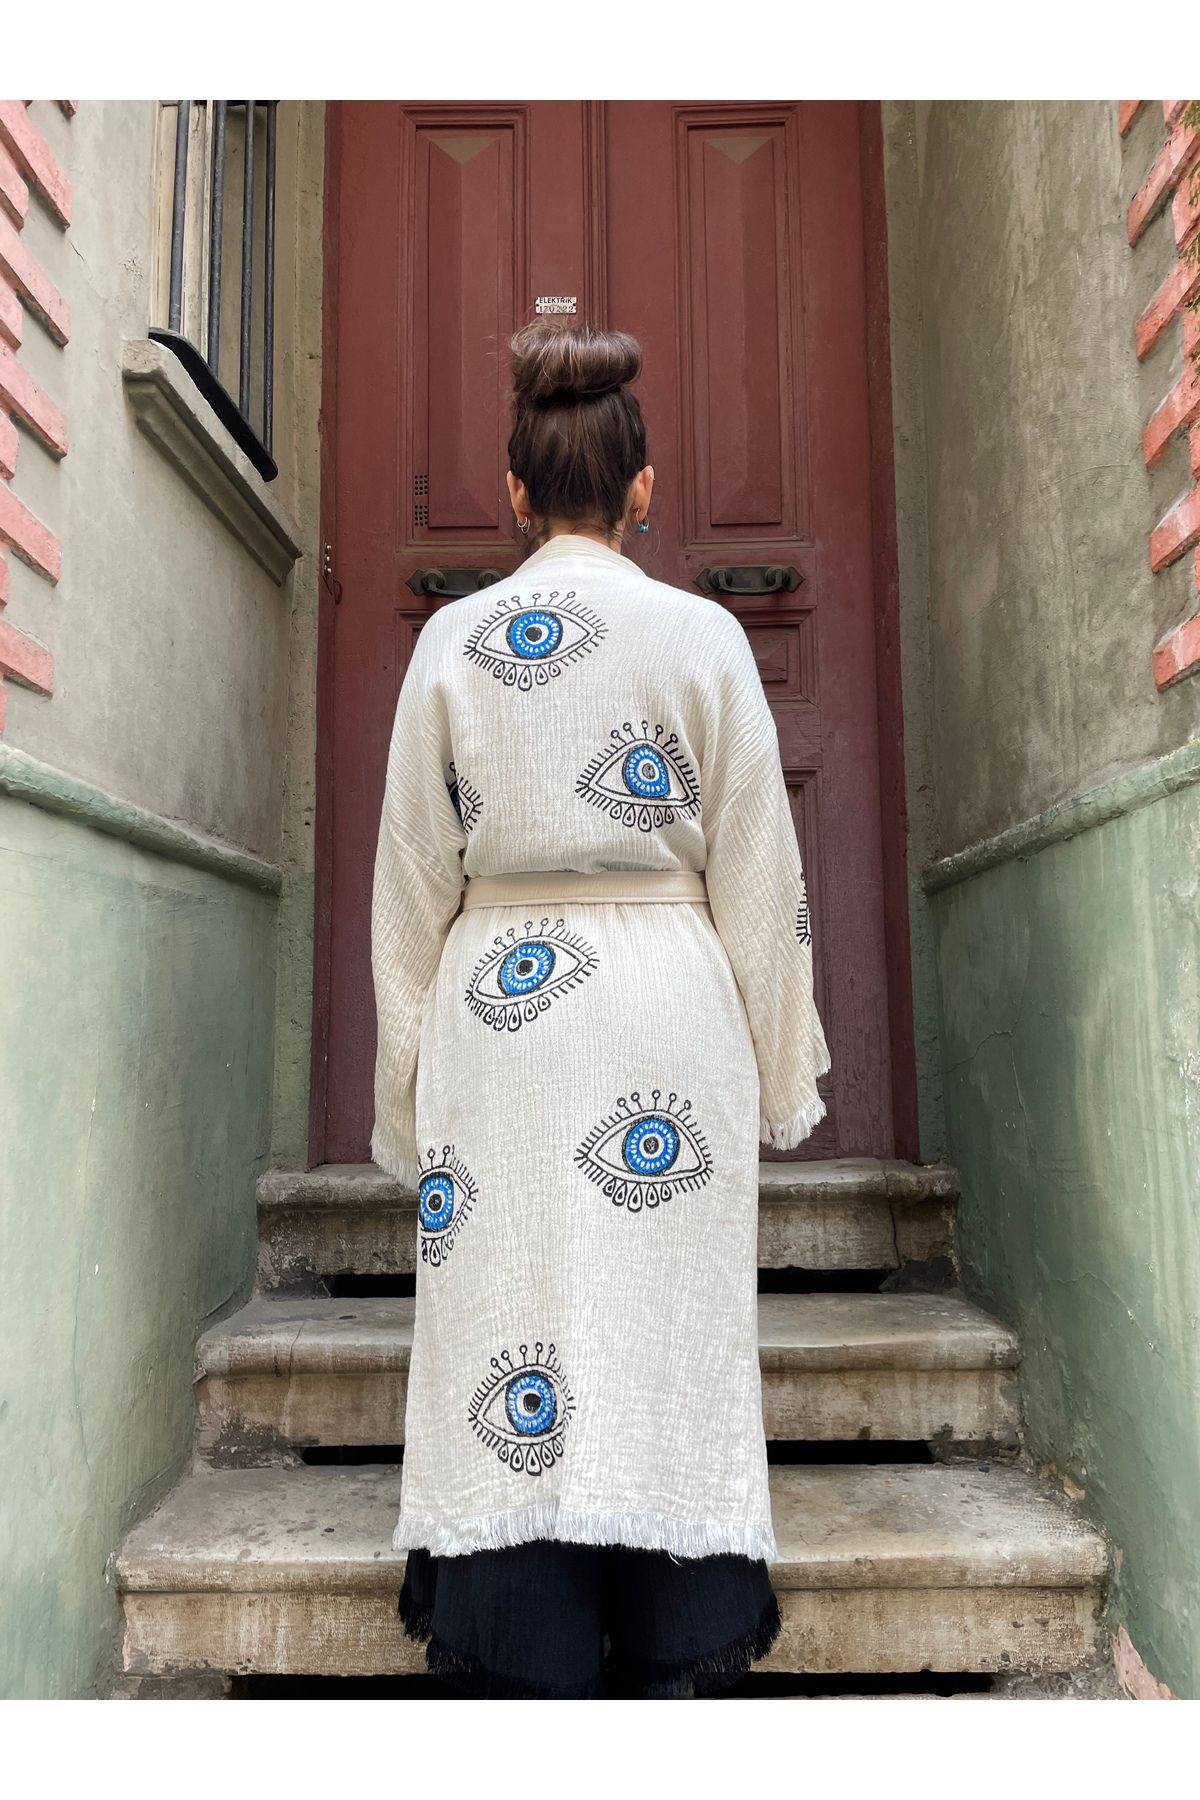 Bohoyasam Bohem Müslin Kimono , mavi Göz Desenli Kimono, Yoga Kimono, Festival Kimono